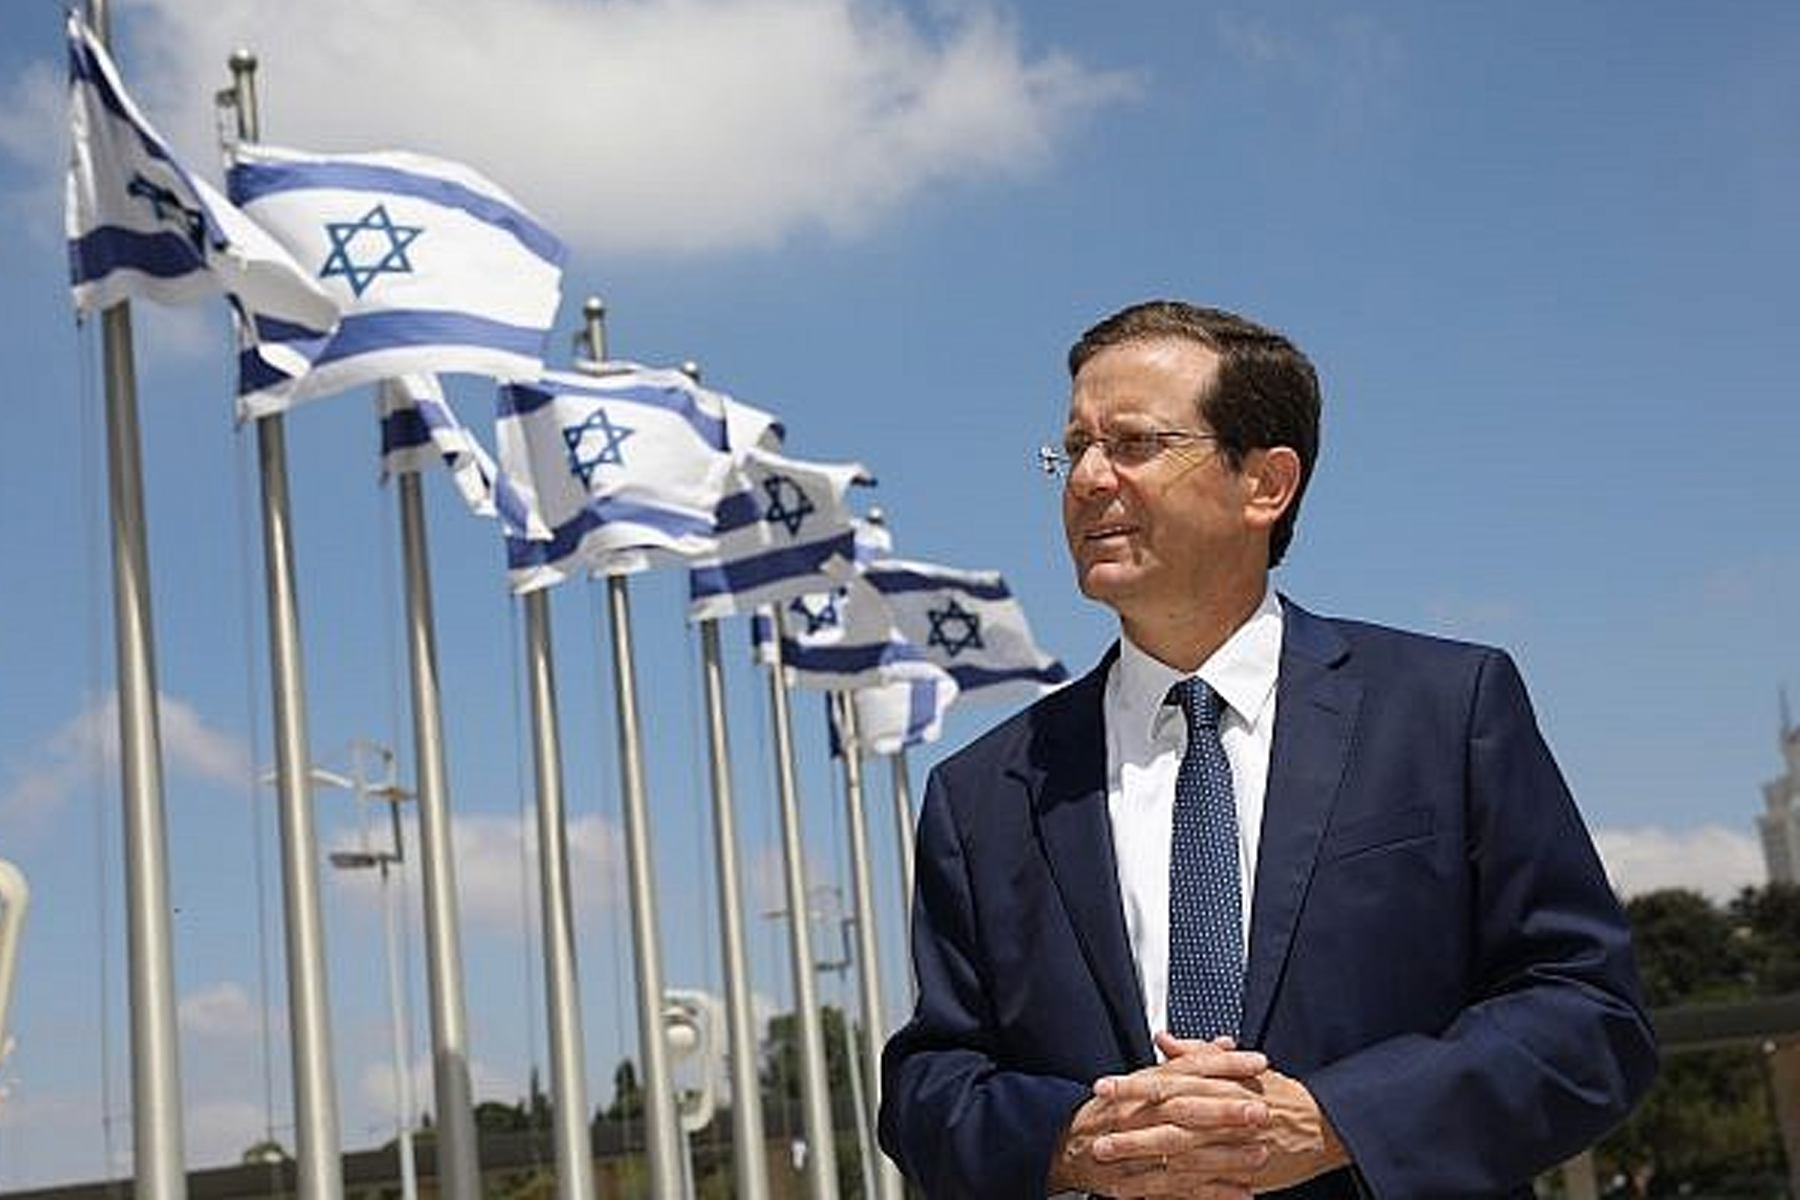 اسحاق هرتسوگ با کسب 87 رأی از 120 عضو کنست یازدهمین رئیس جمهور اسرائیل شد